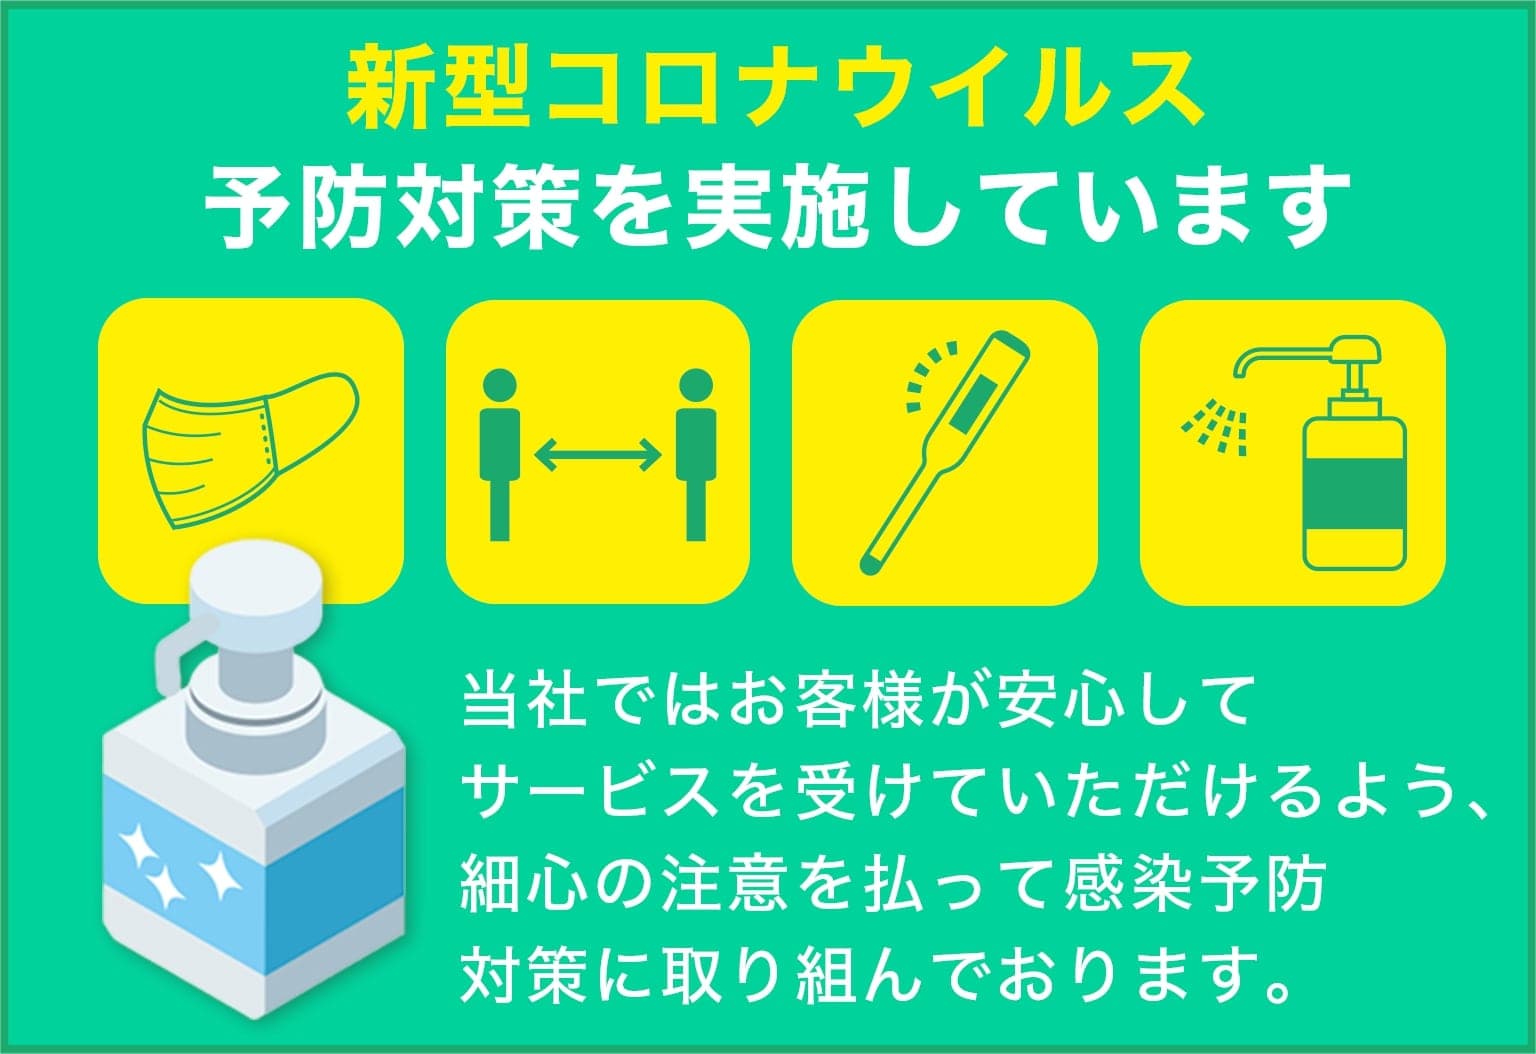 株式会社西日本緑化は新型コロナウイルス予防対策を実施しています